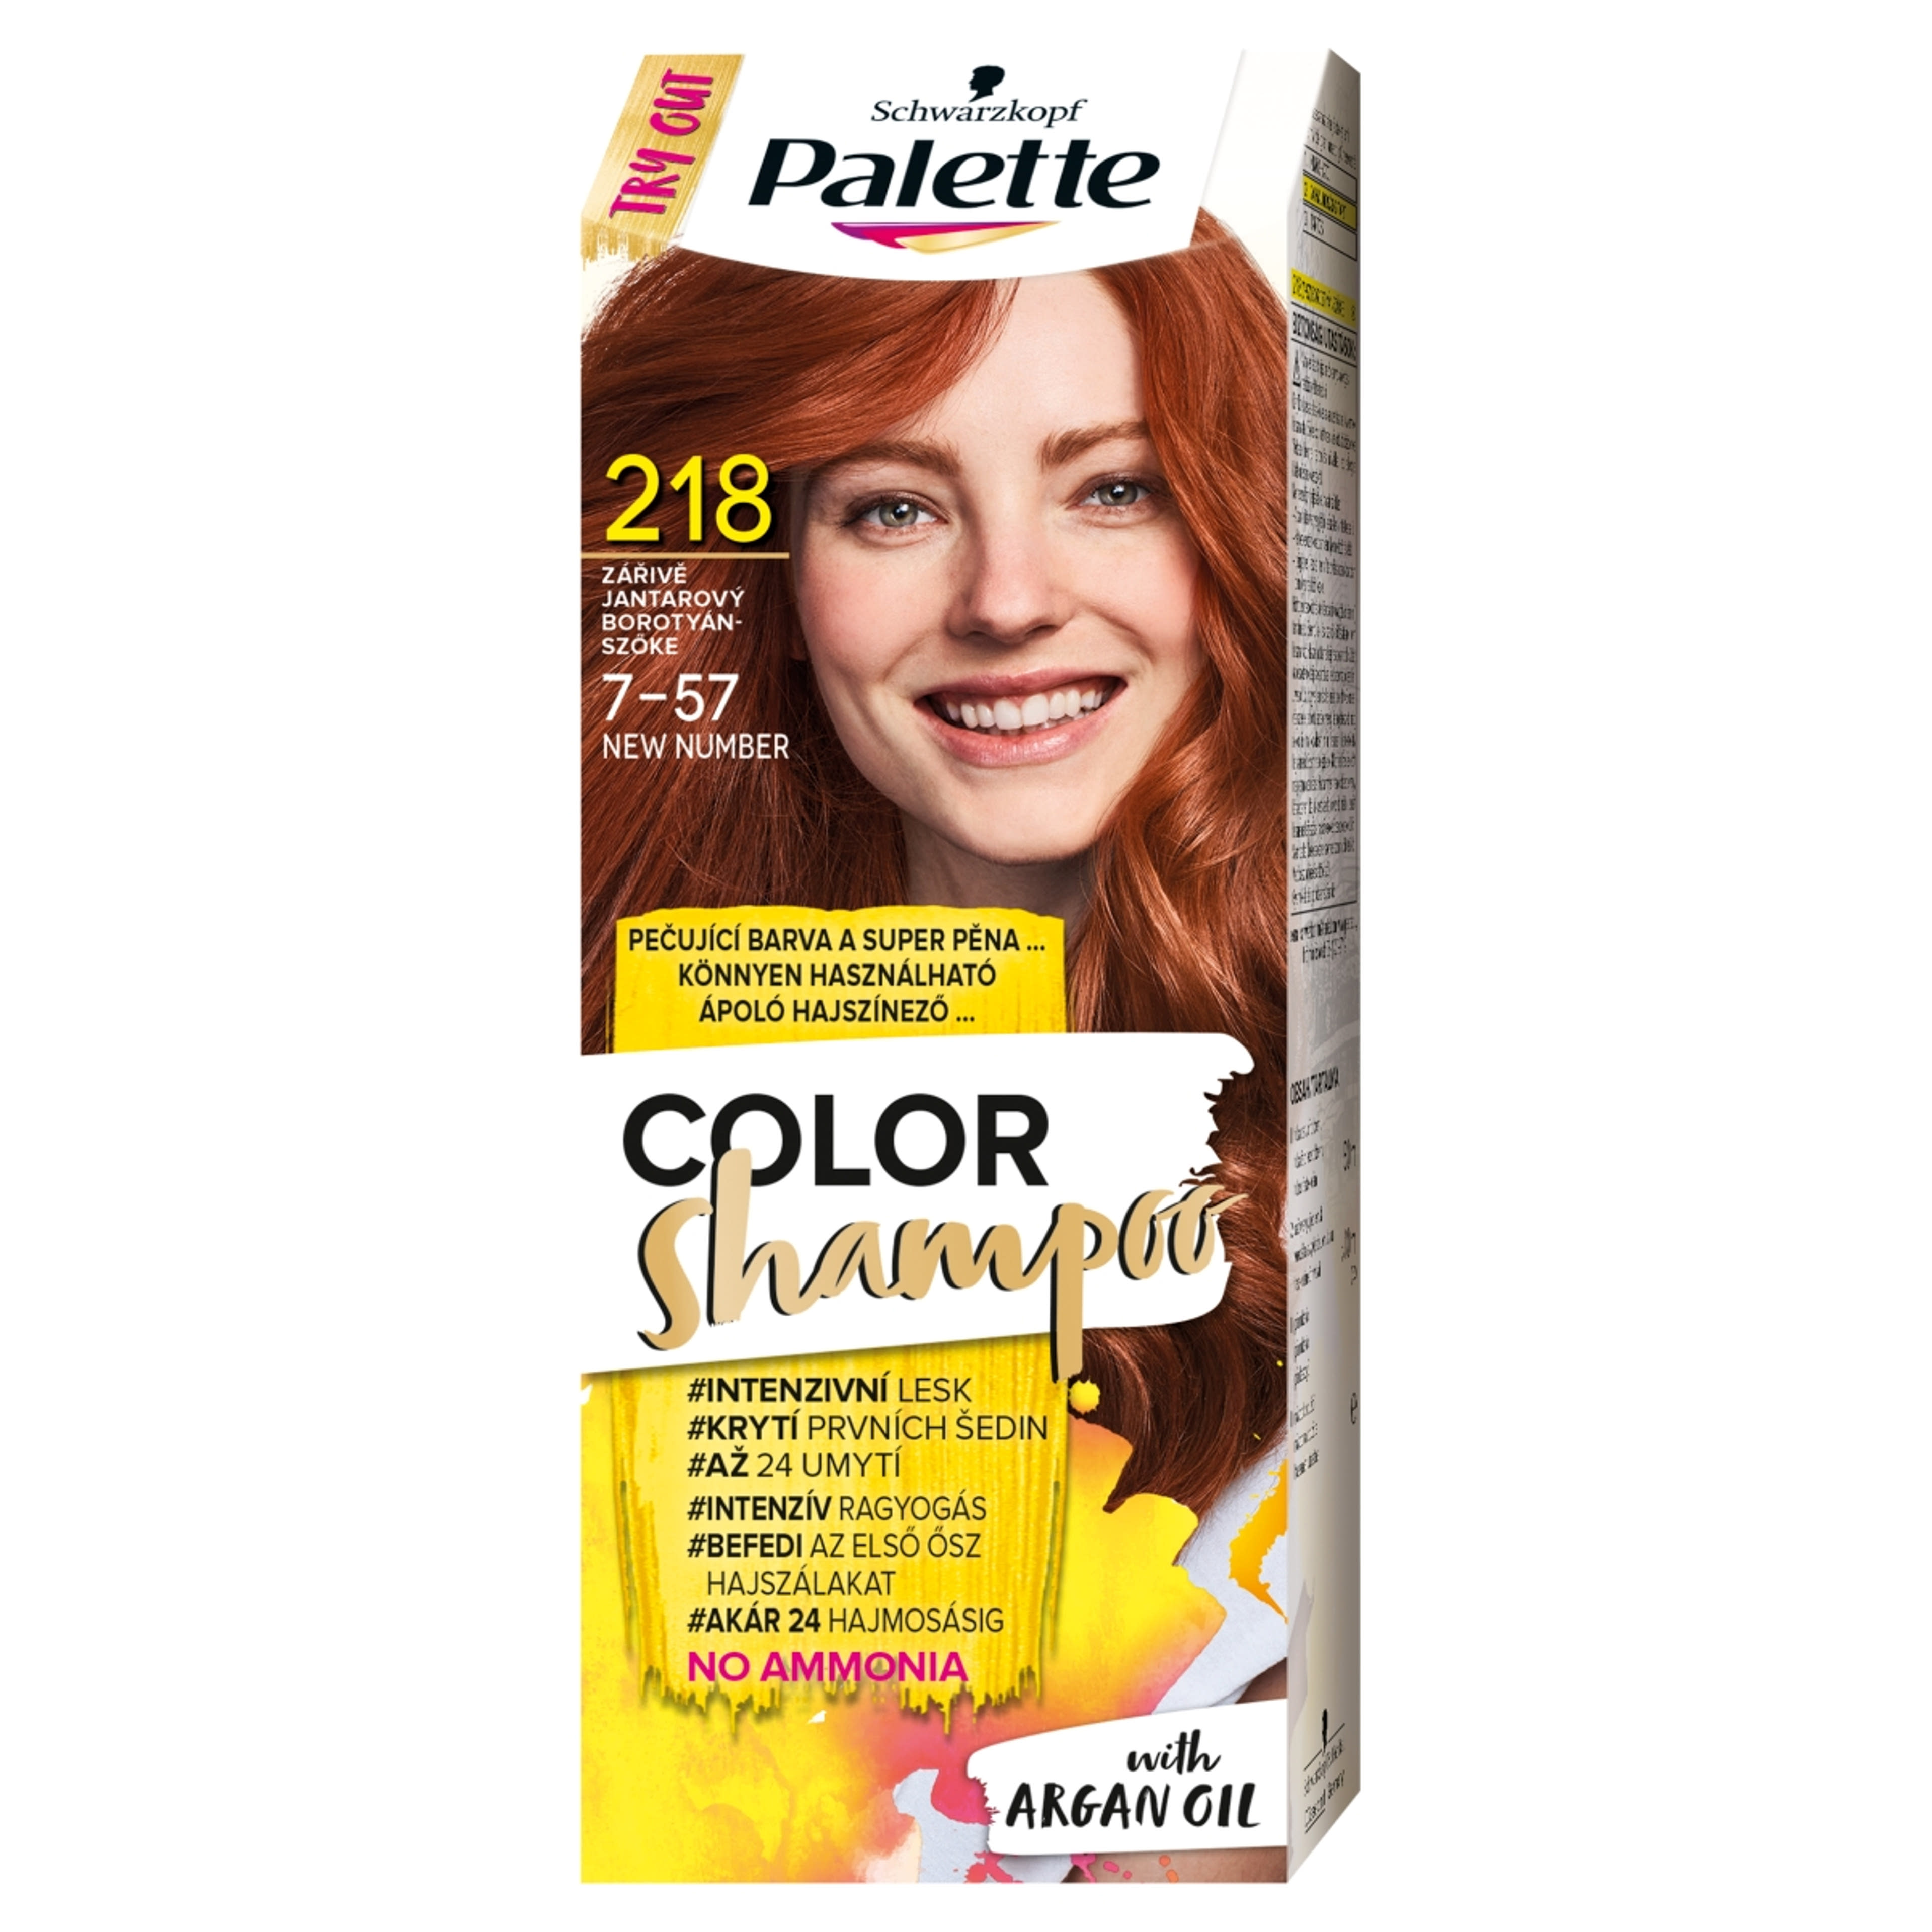 Schwarzkopf Palette Color Shampoo hajfesték 218 borostyánszőke - 1 db-1